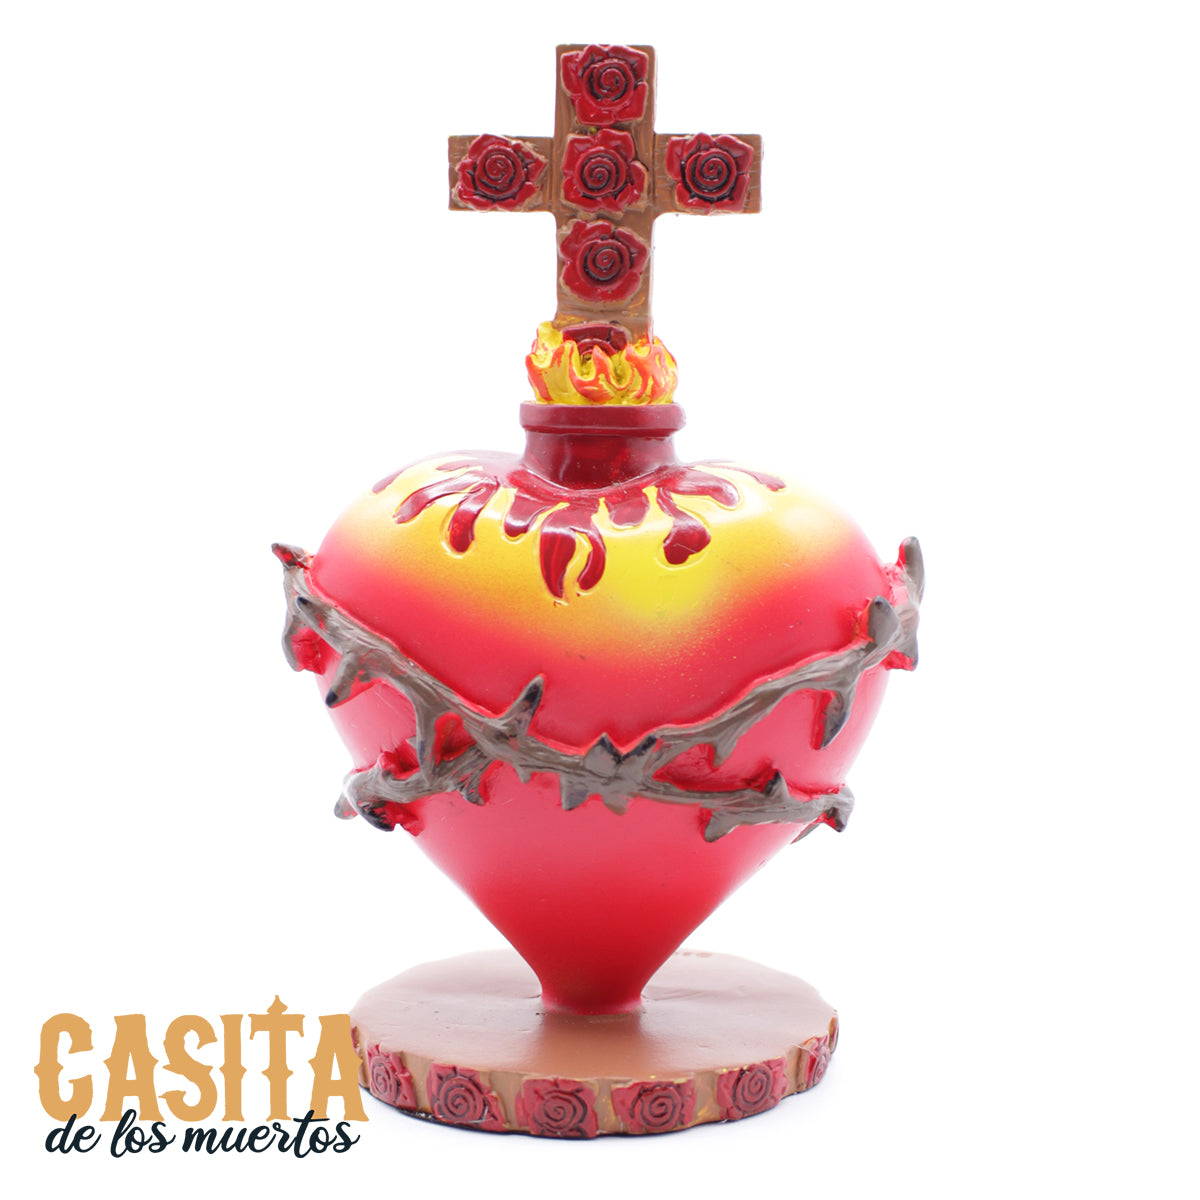 Sacred Cross and Heart Dia De Los Muertos Statue, Red Heart Traditional Statue by Casita De Los Muertos